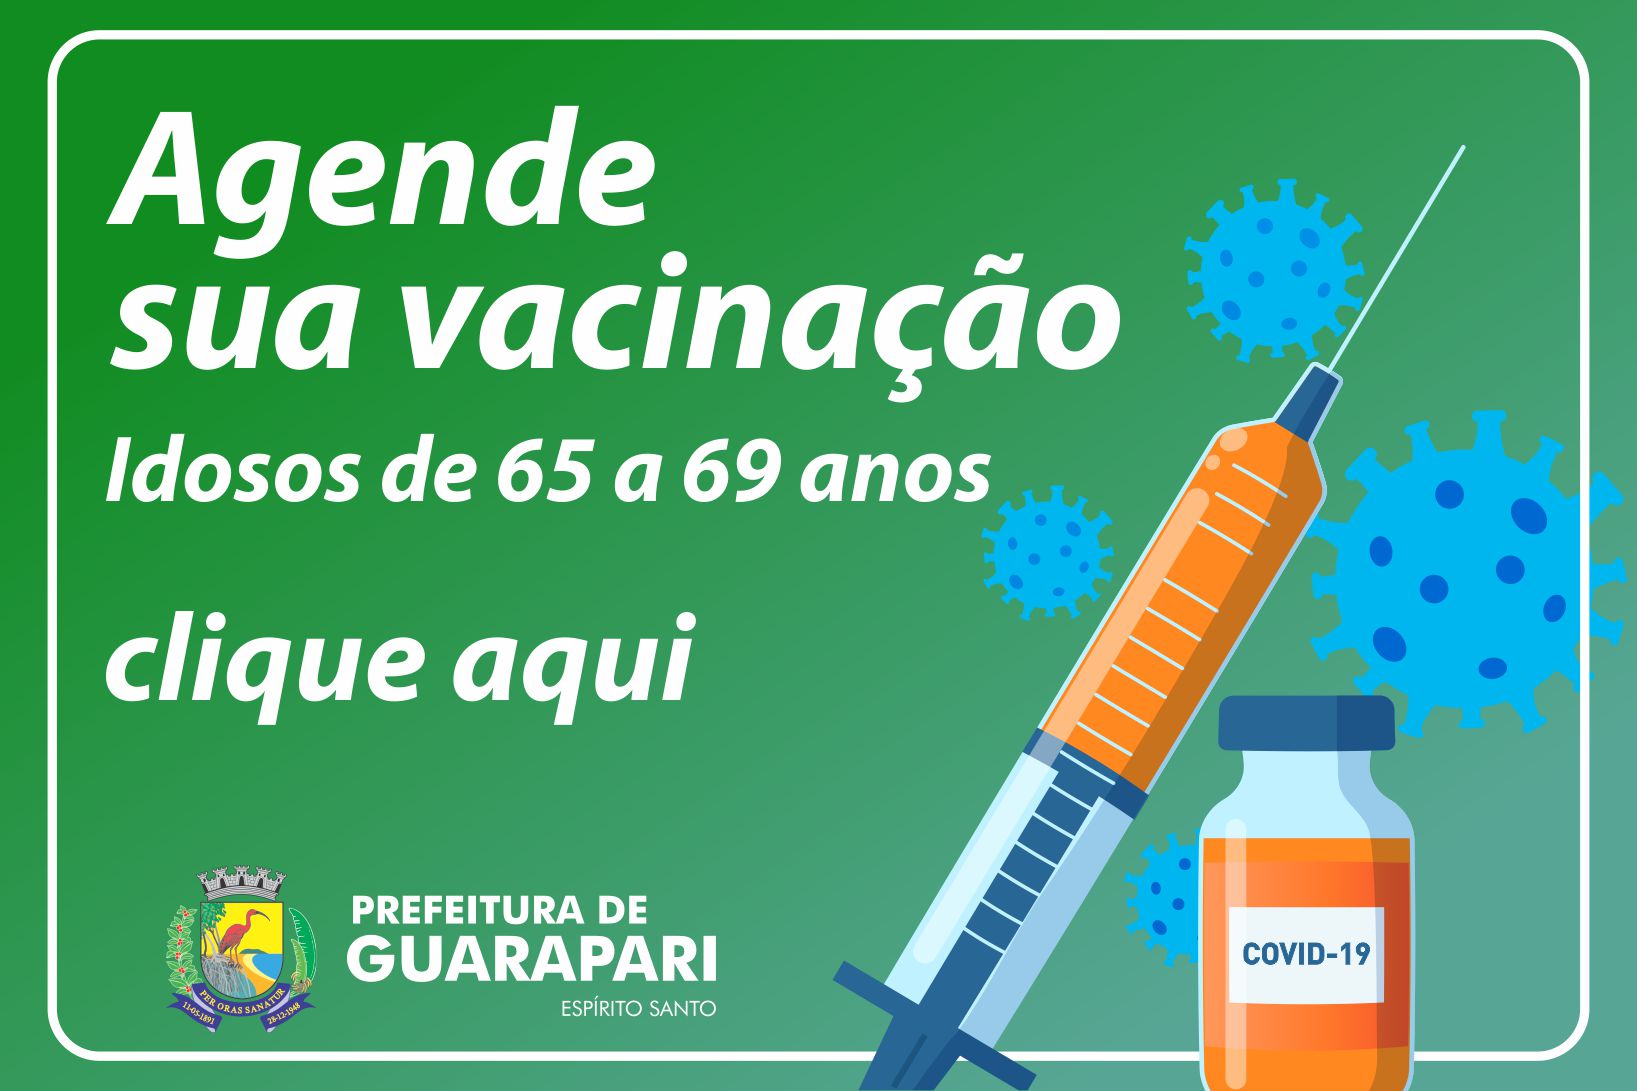 Covid-19: Prefeitura de Guarapari abre agendamento para vacinar idosos de 65 a 69 anos